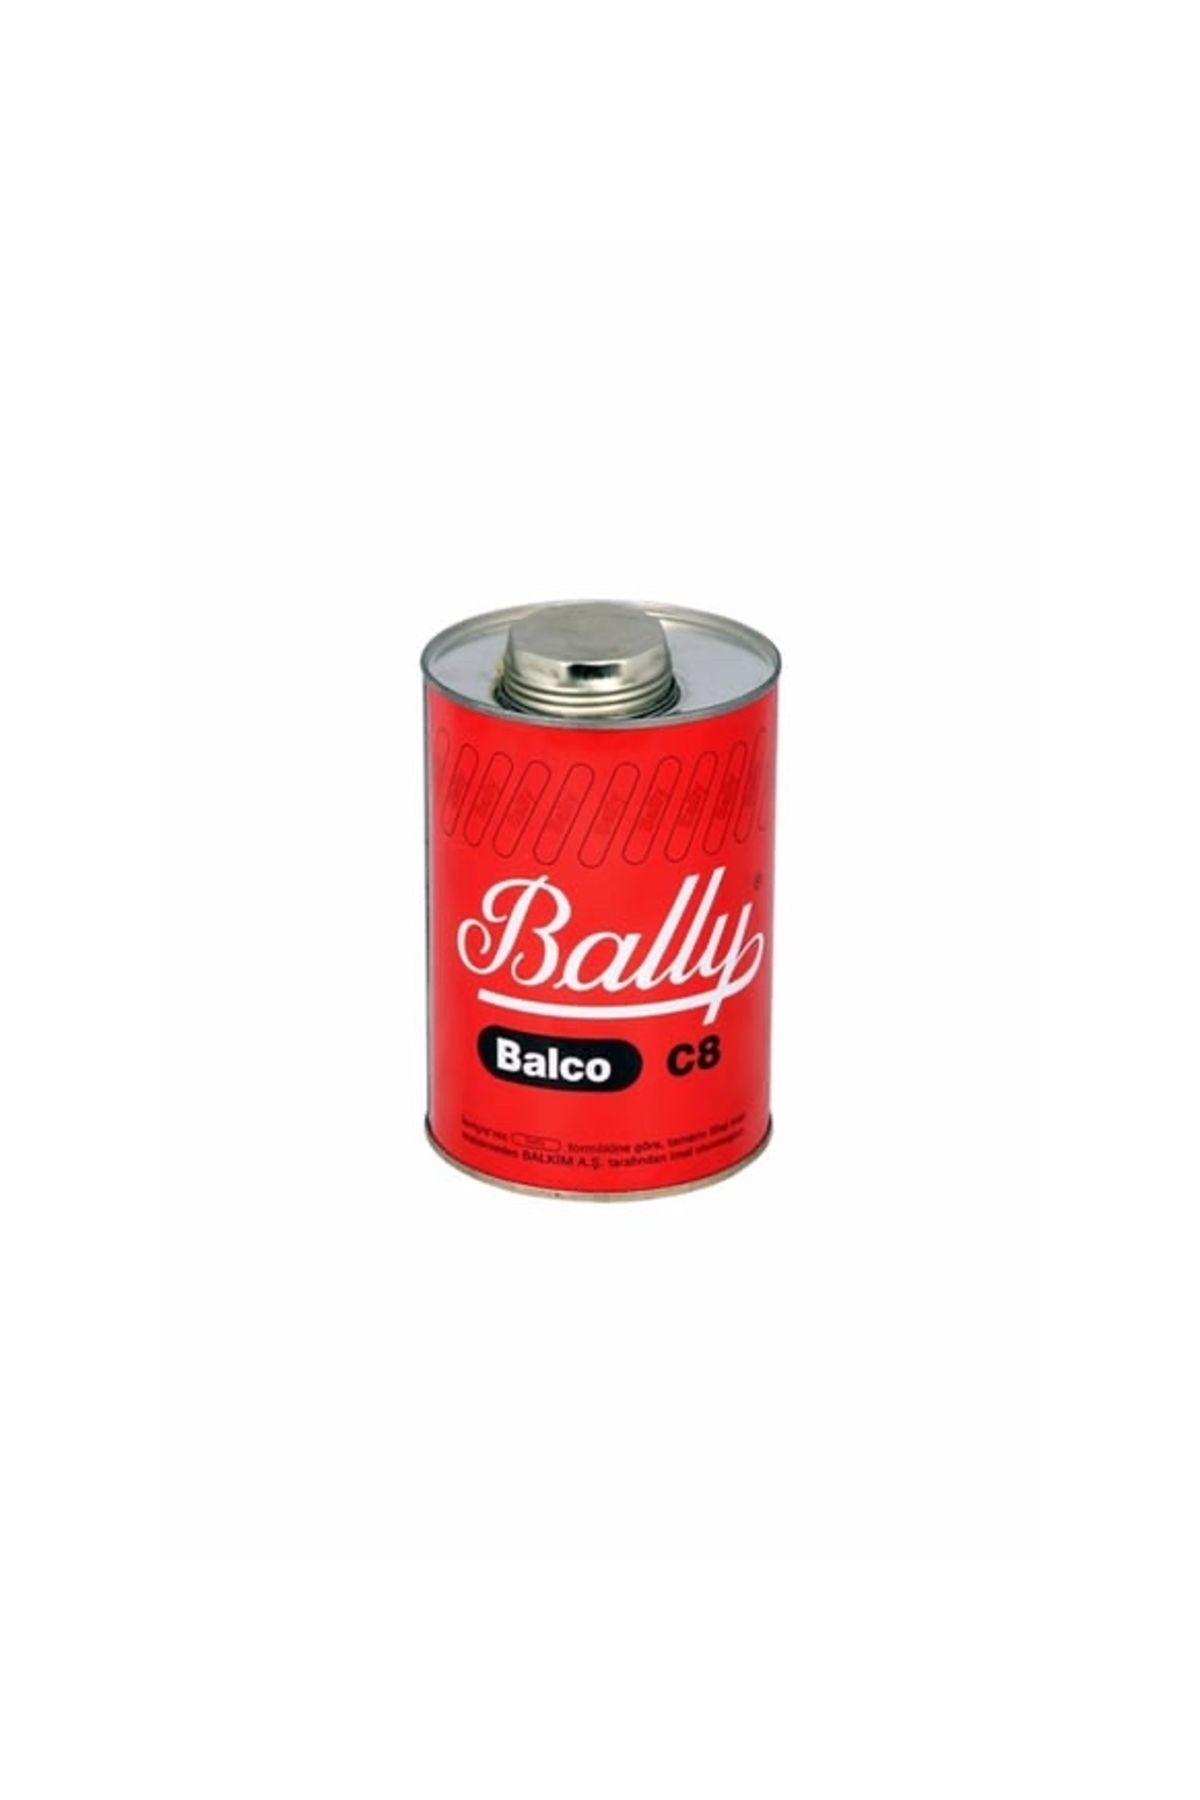 Bally Balco Genel Amaçlı Yapıştırıcı 850 Gram